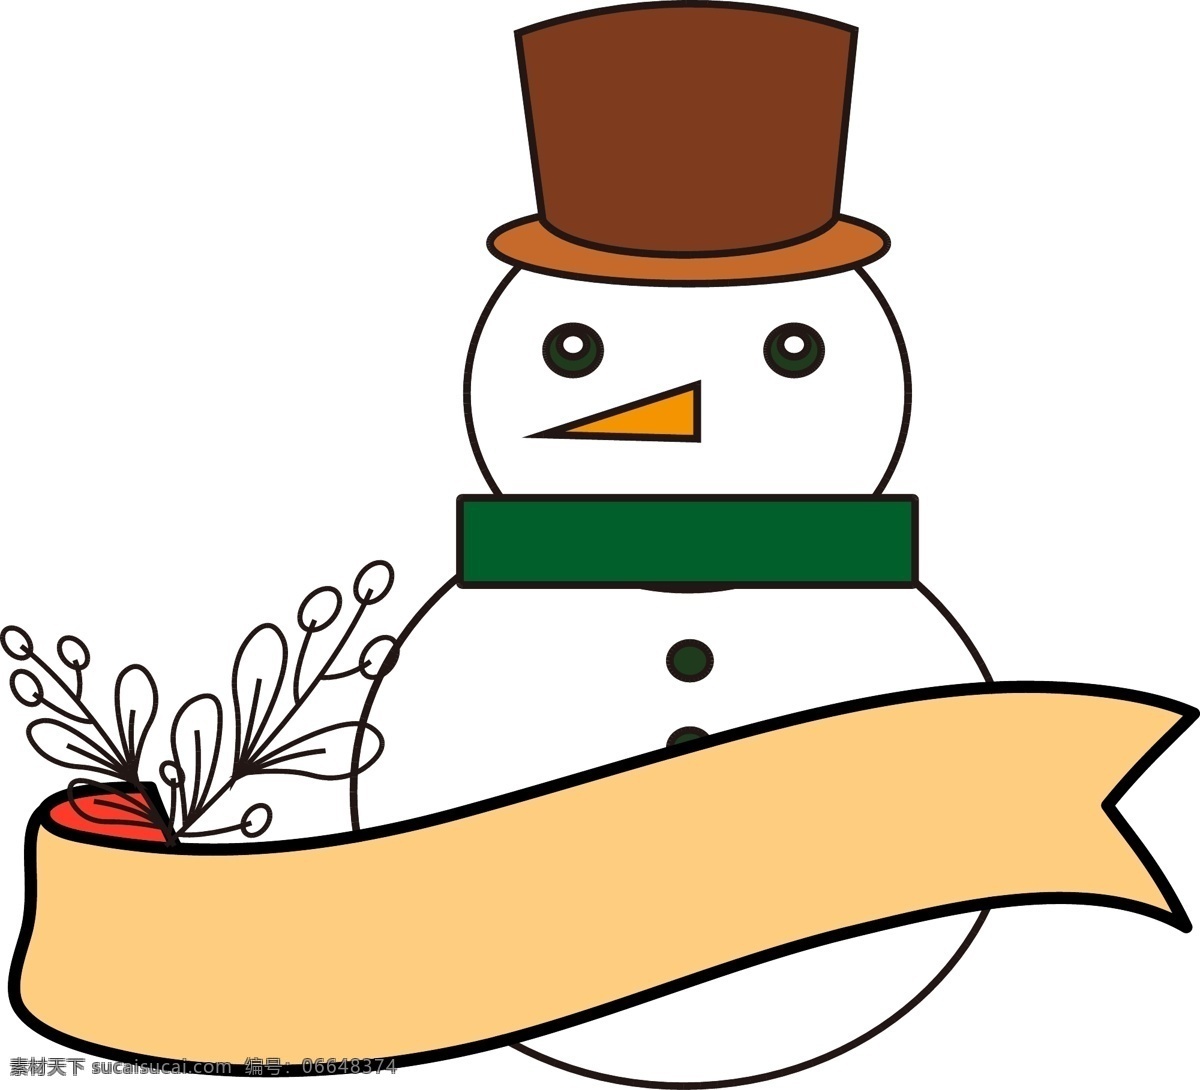 雪人 标签 元素 花瓣 商用 冬季 冬天 房屋 房子 矢量图 背景 冰倒映 圣诞 下雪新春 新年 雪